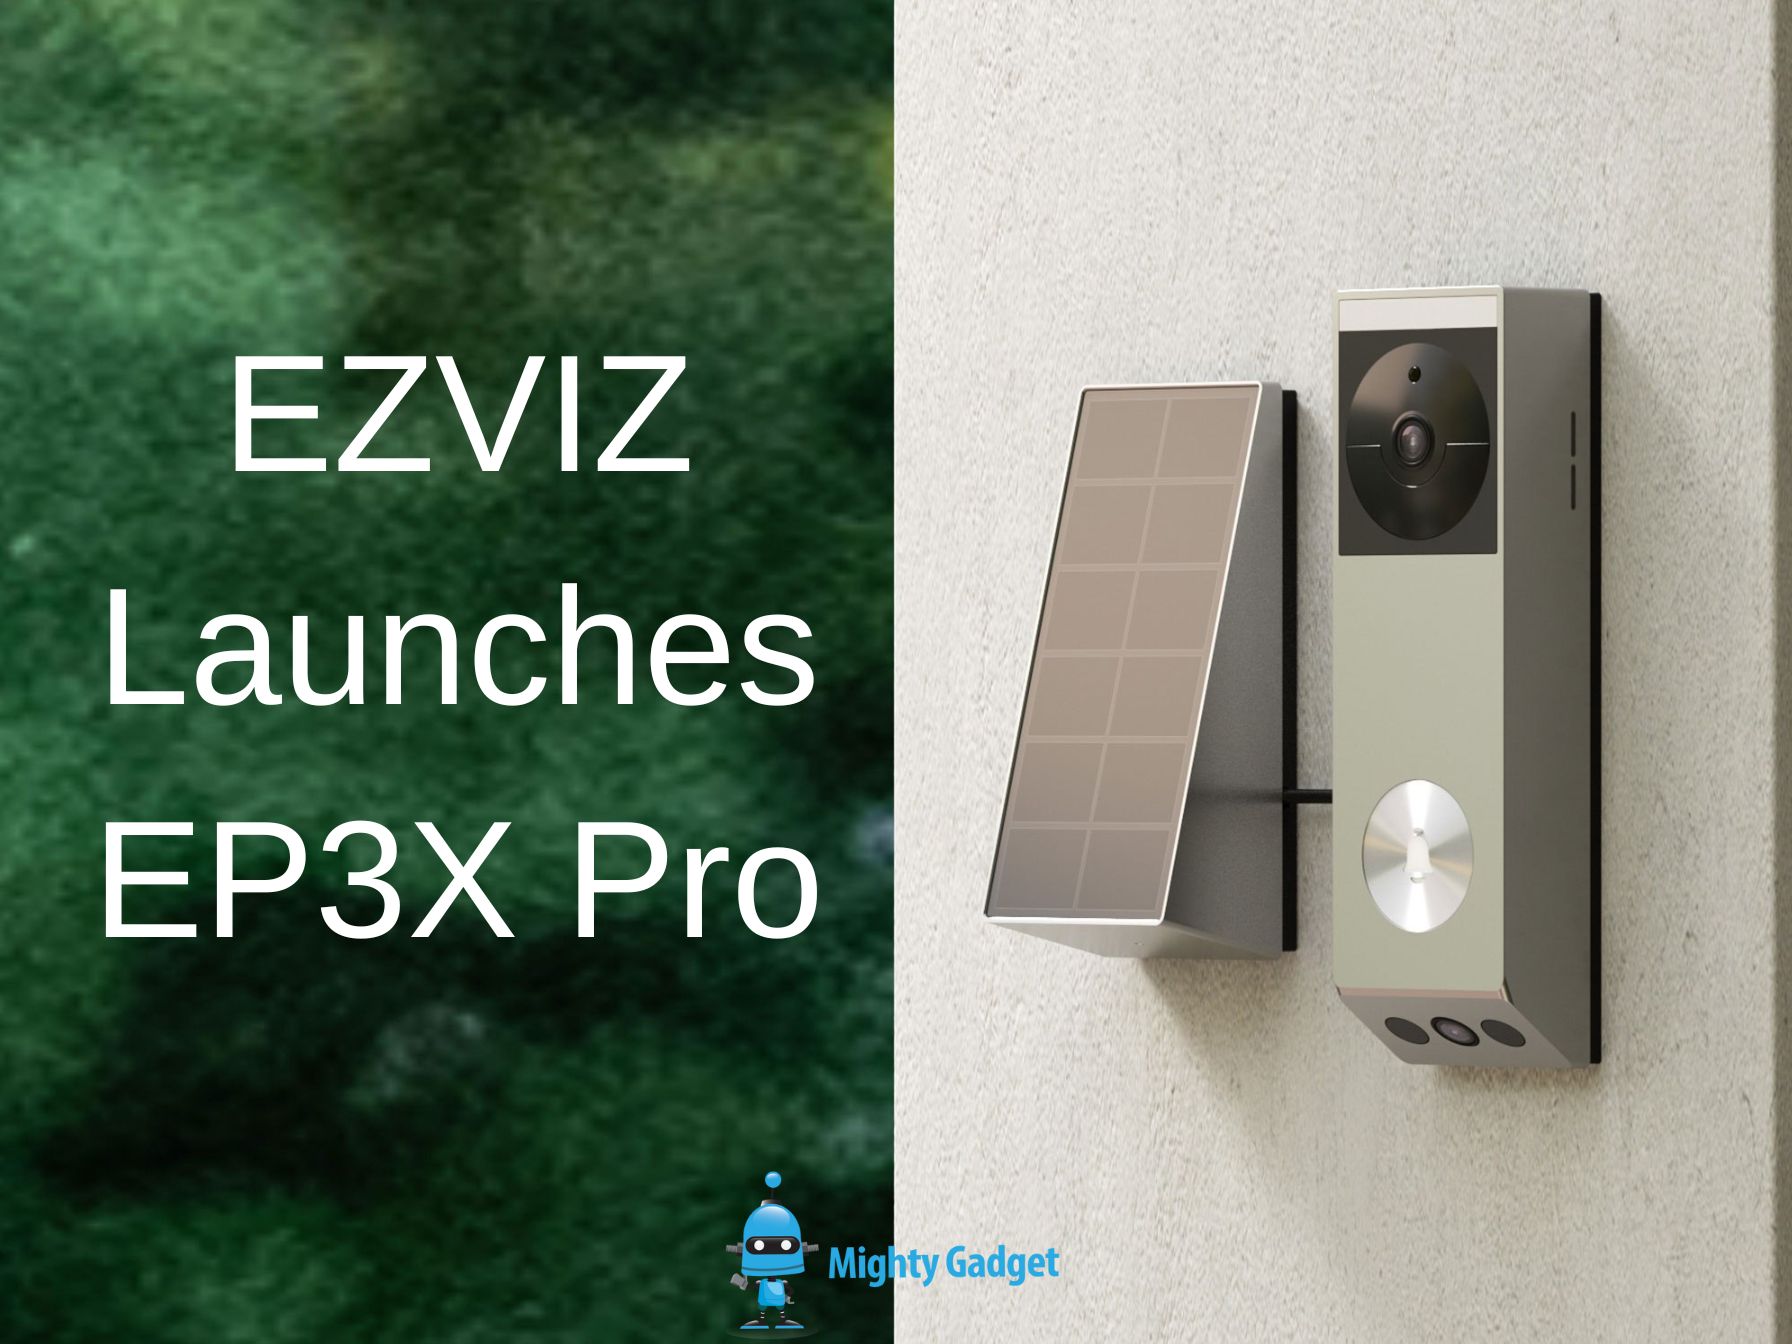 EZVIZ Launches EP3X Pro